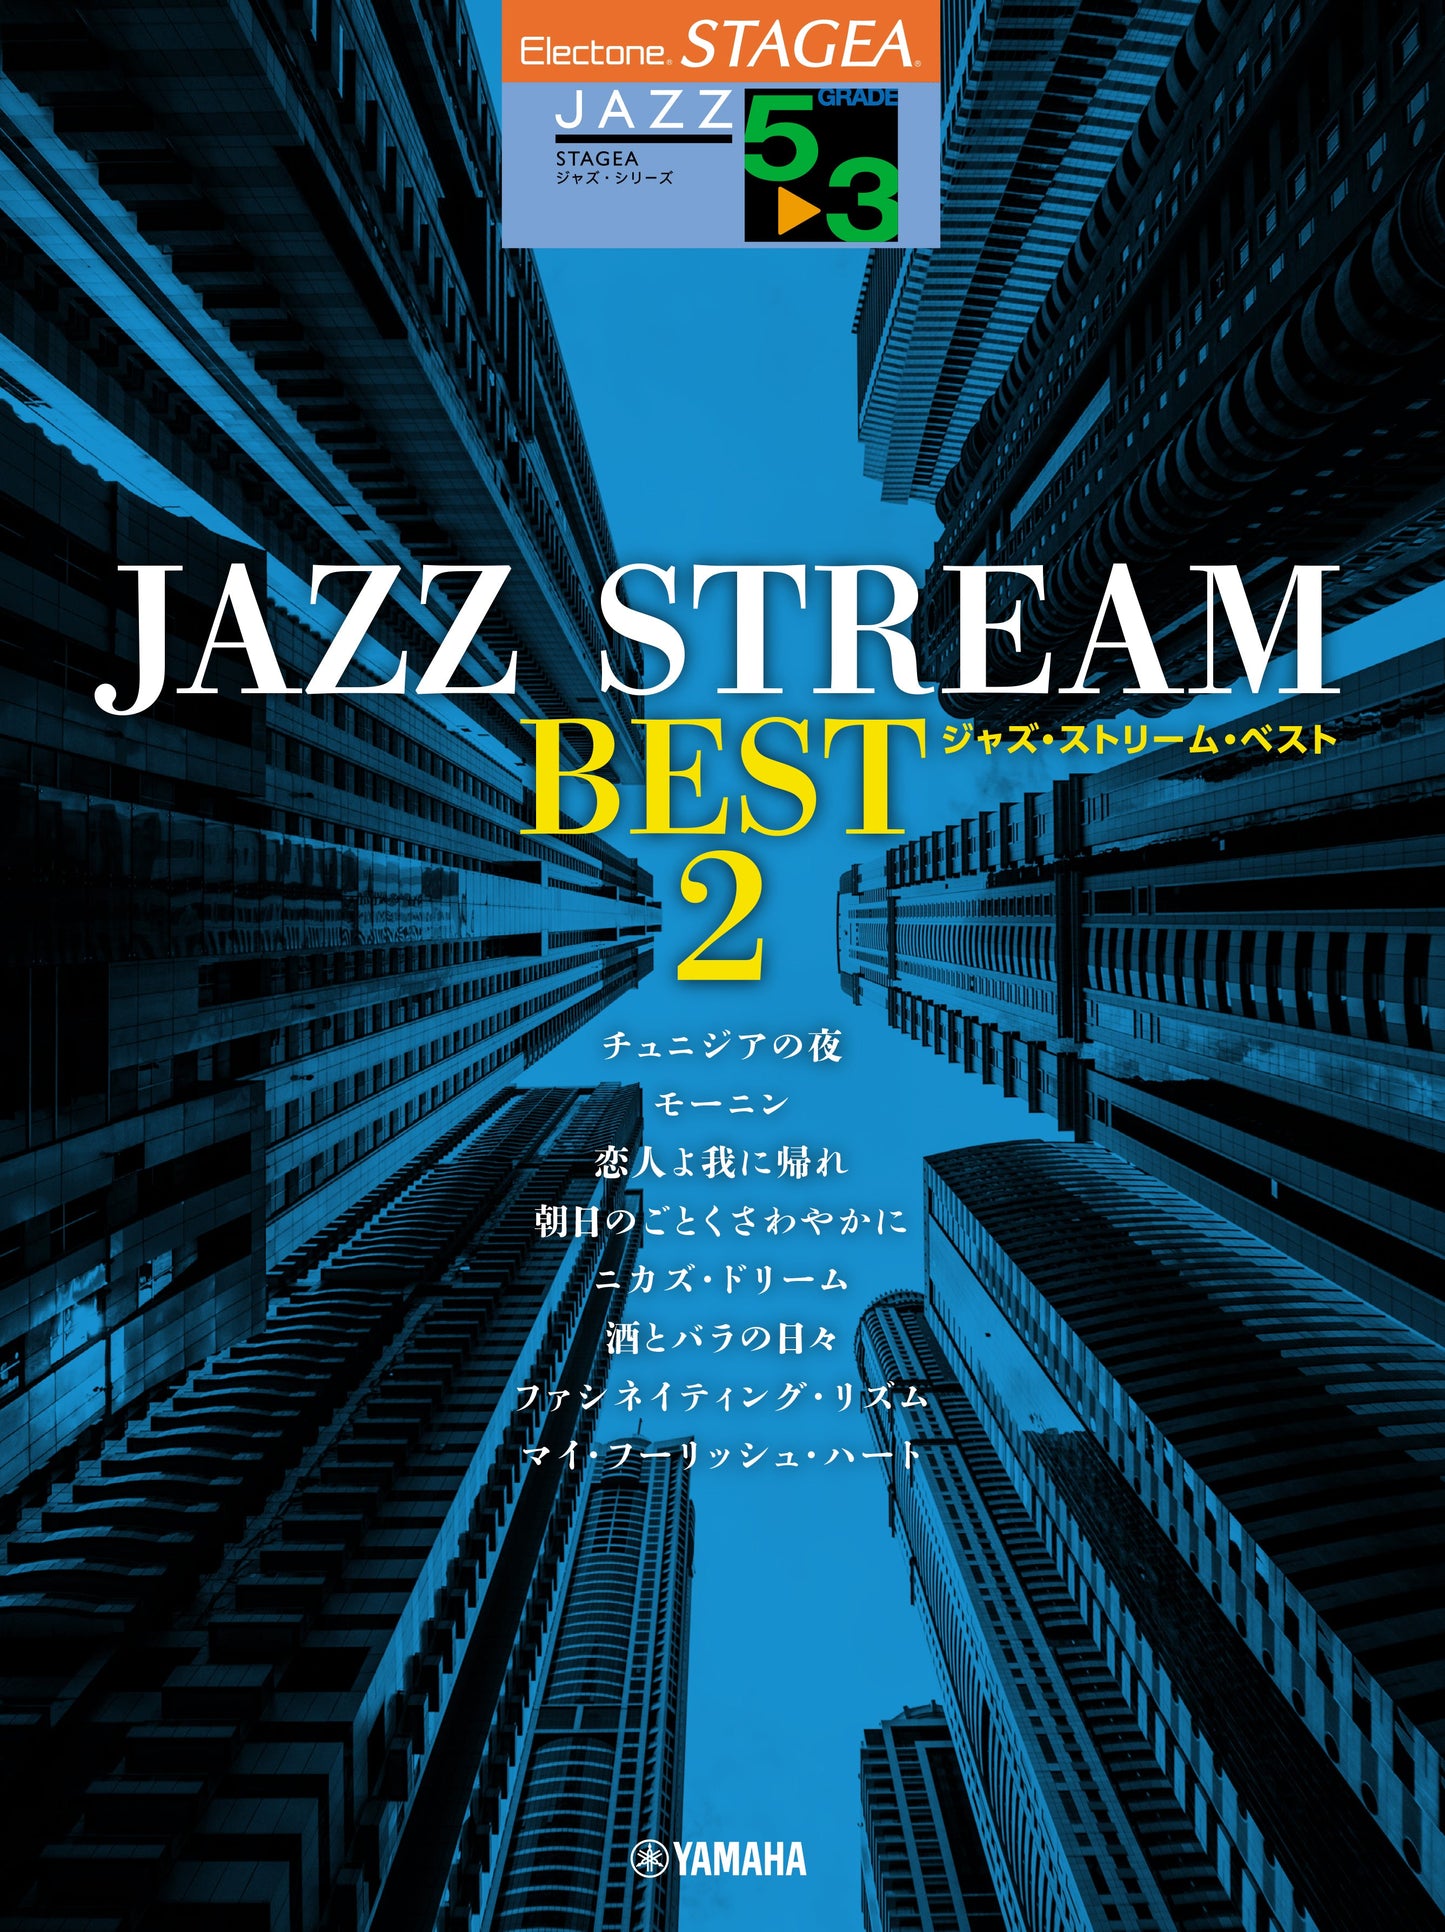 STAGEA ジャズ・シリーズ 5～3級 JAZZ STREAM BEST 2